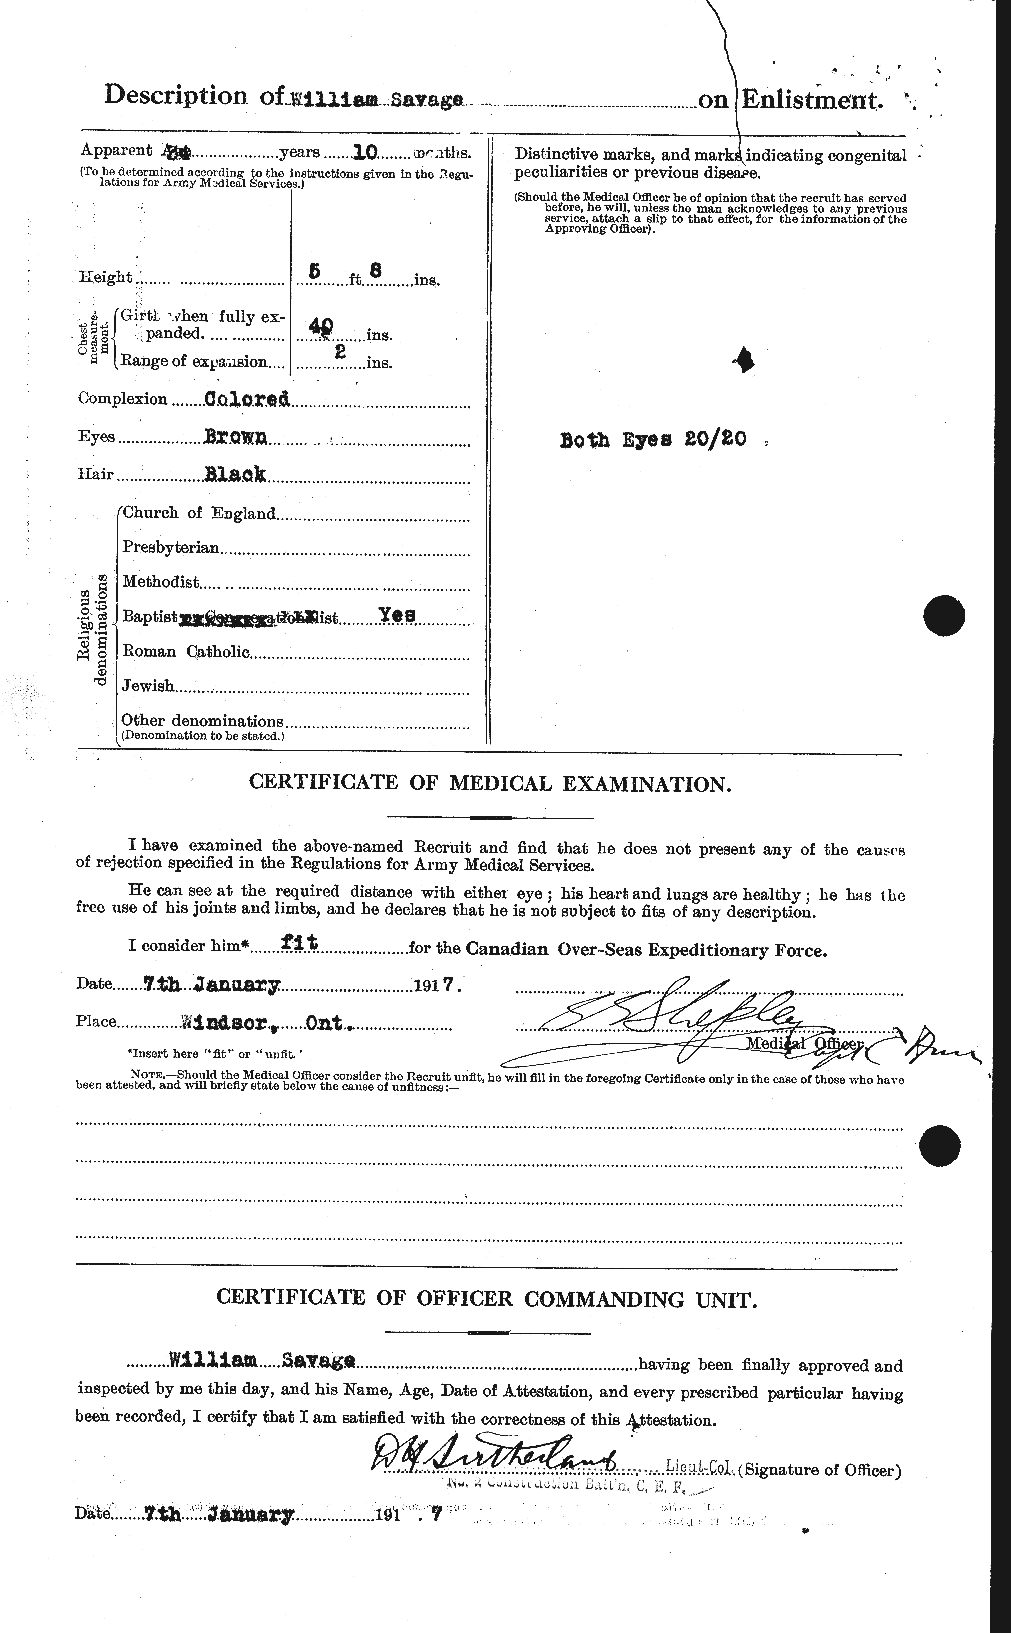 Dossiers du Personnel de la Première Guerre mondiale - CEC 080316b